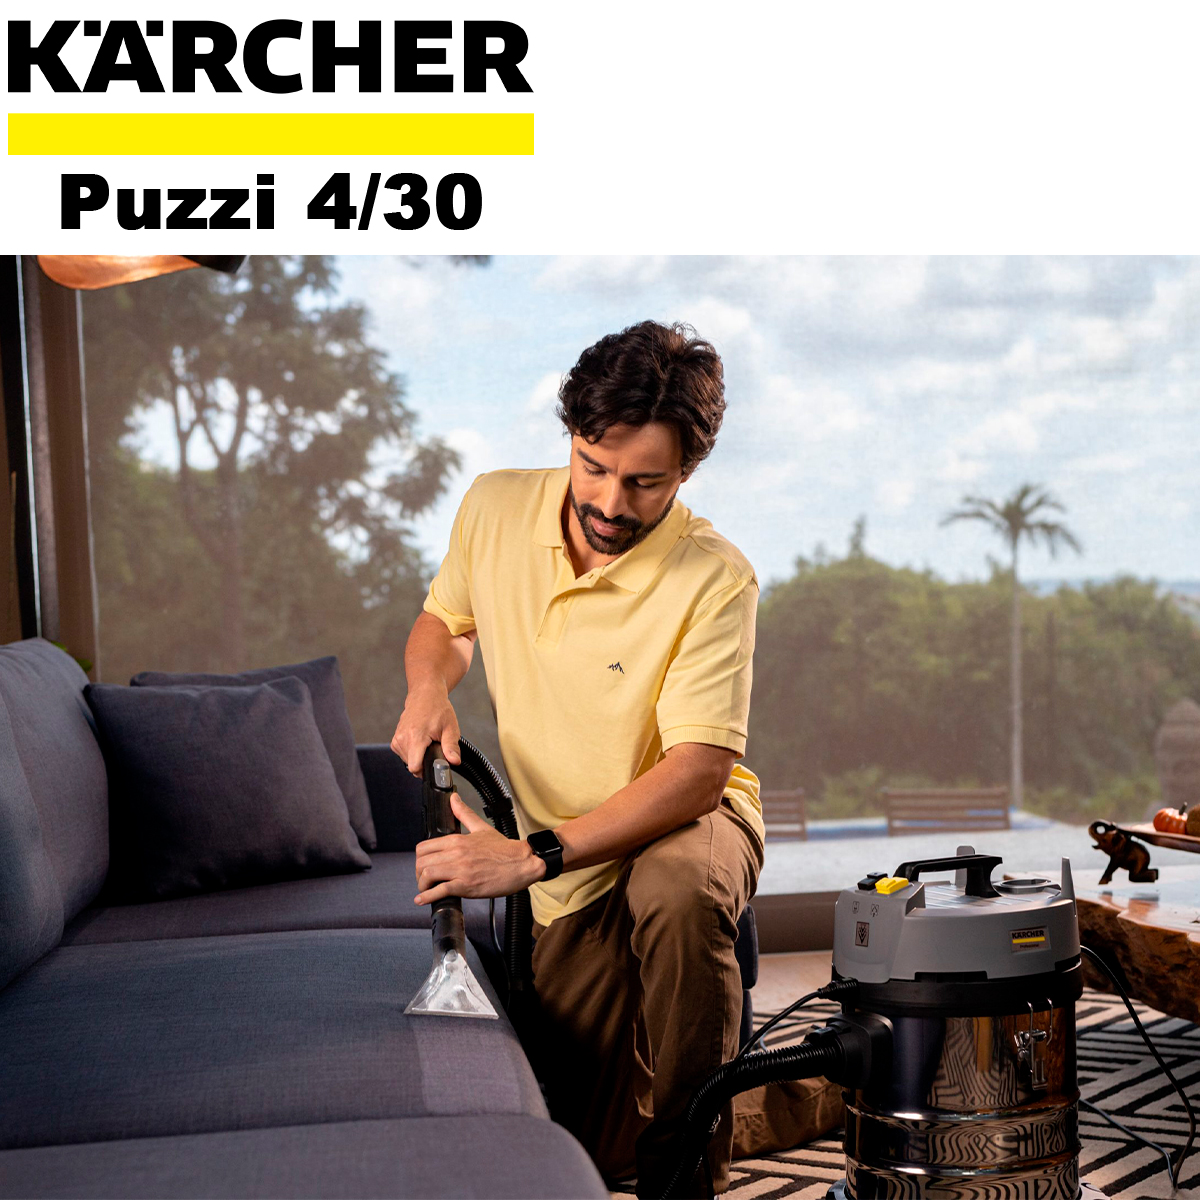 Karcher Lava Aspiradora Puzzi 4/30 : : Hogar y Cocina